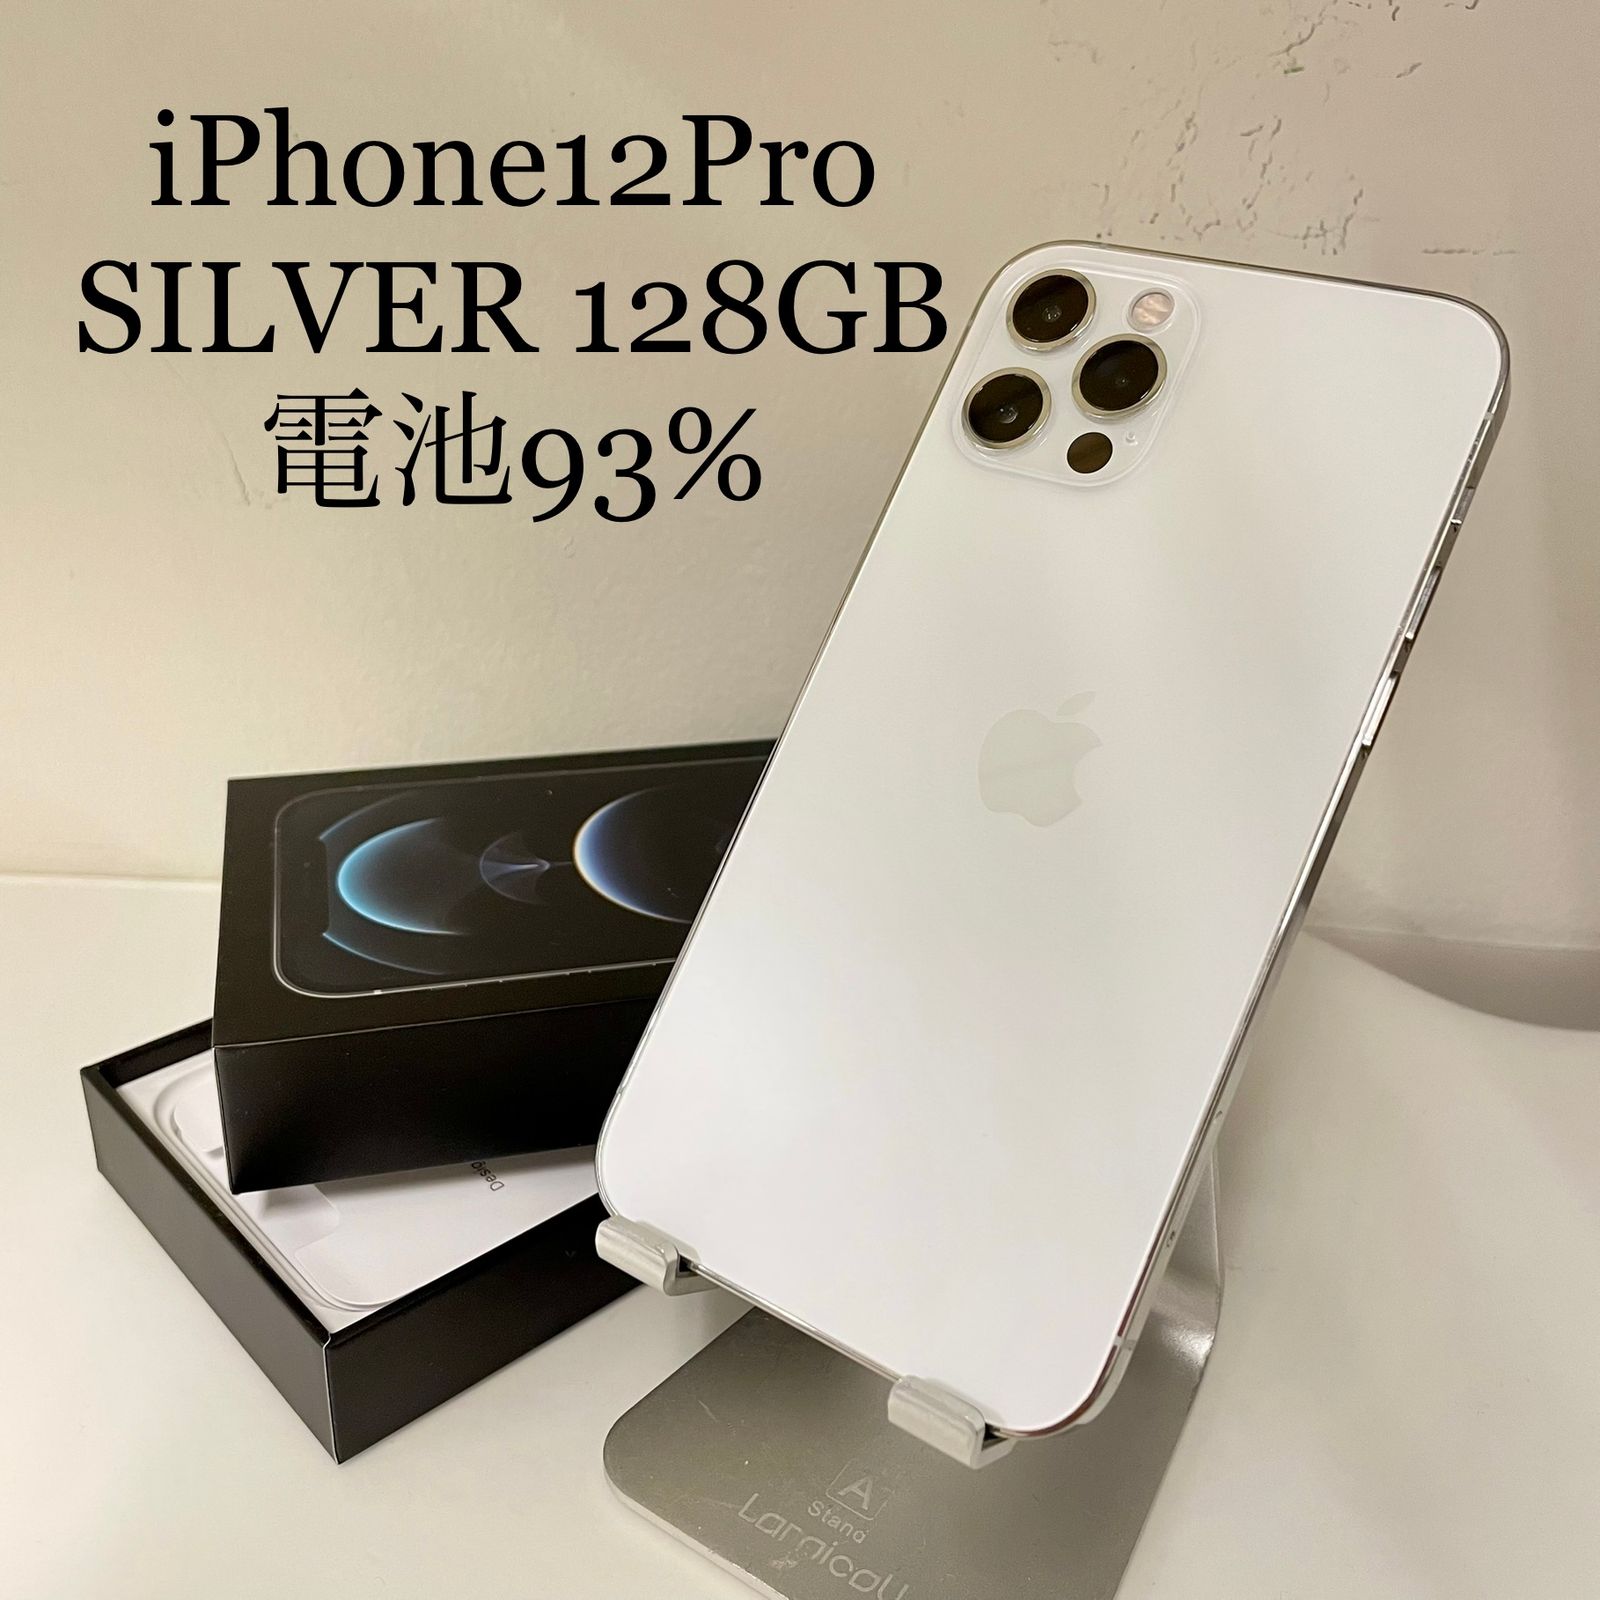 iPhone12 Pro シルバー 128GB 電池残量93% - ネコモバイル - メルカリ